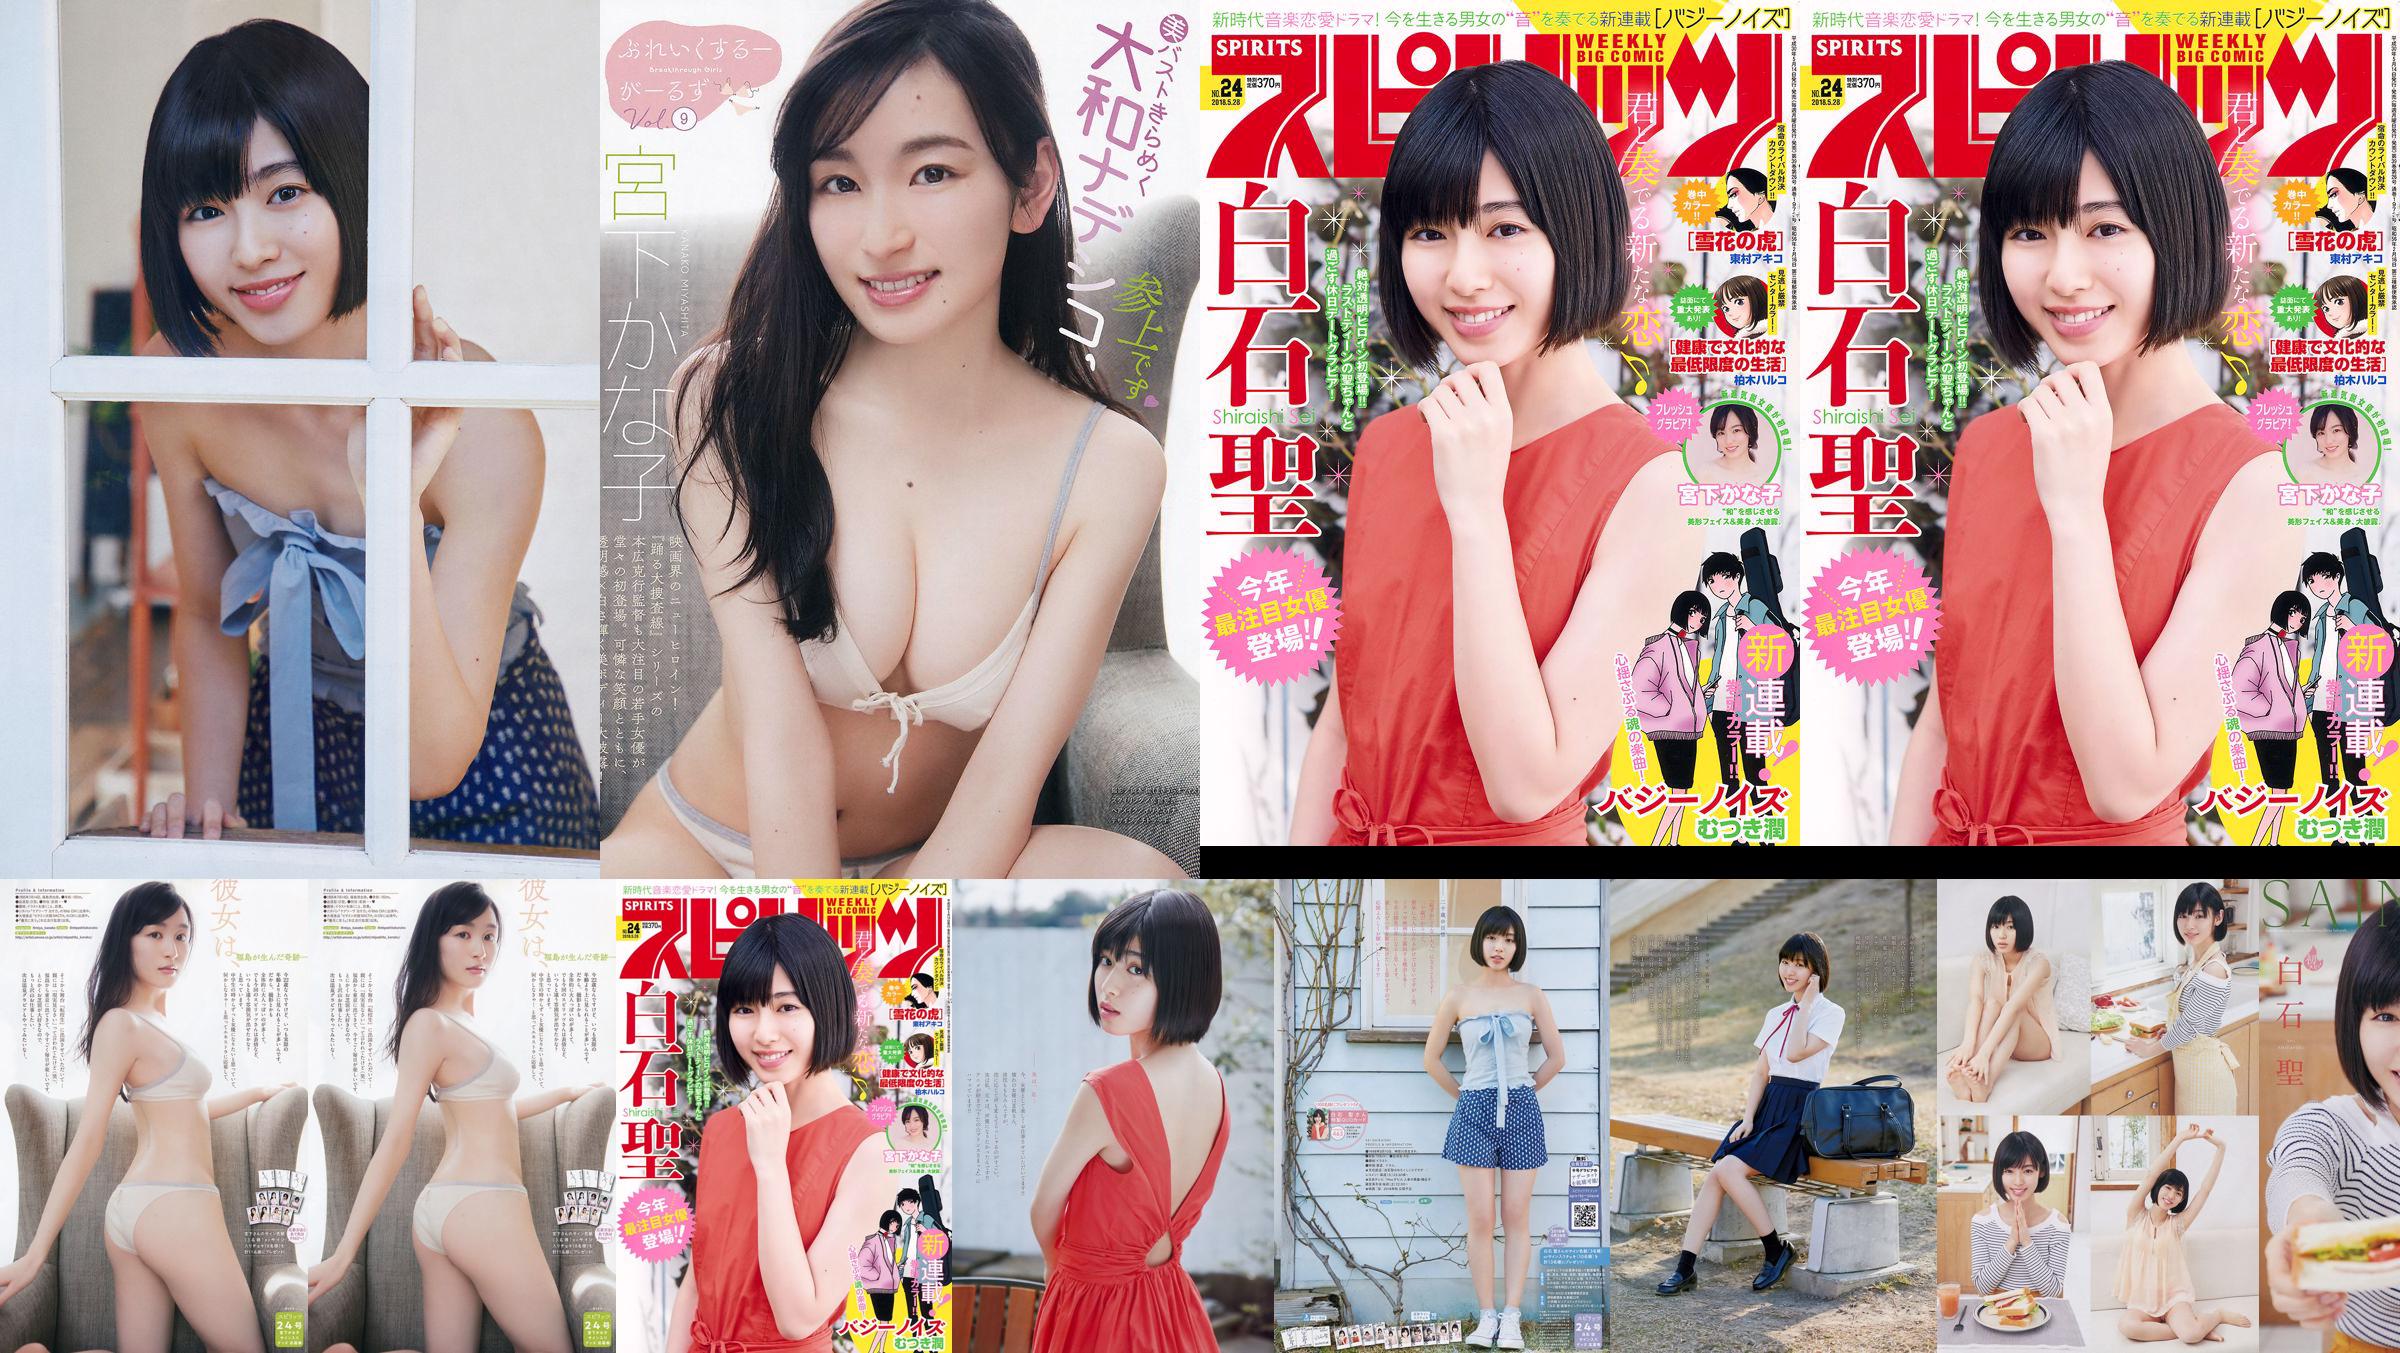 Юрия Кизаки Нана Окада AKB48 Under Girls [Weekly Young Jump] 2015 № 36-37 Фото No.f83aab Страница 5